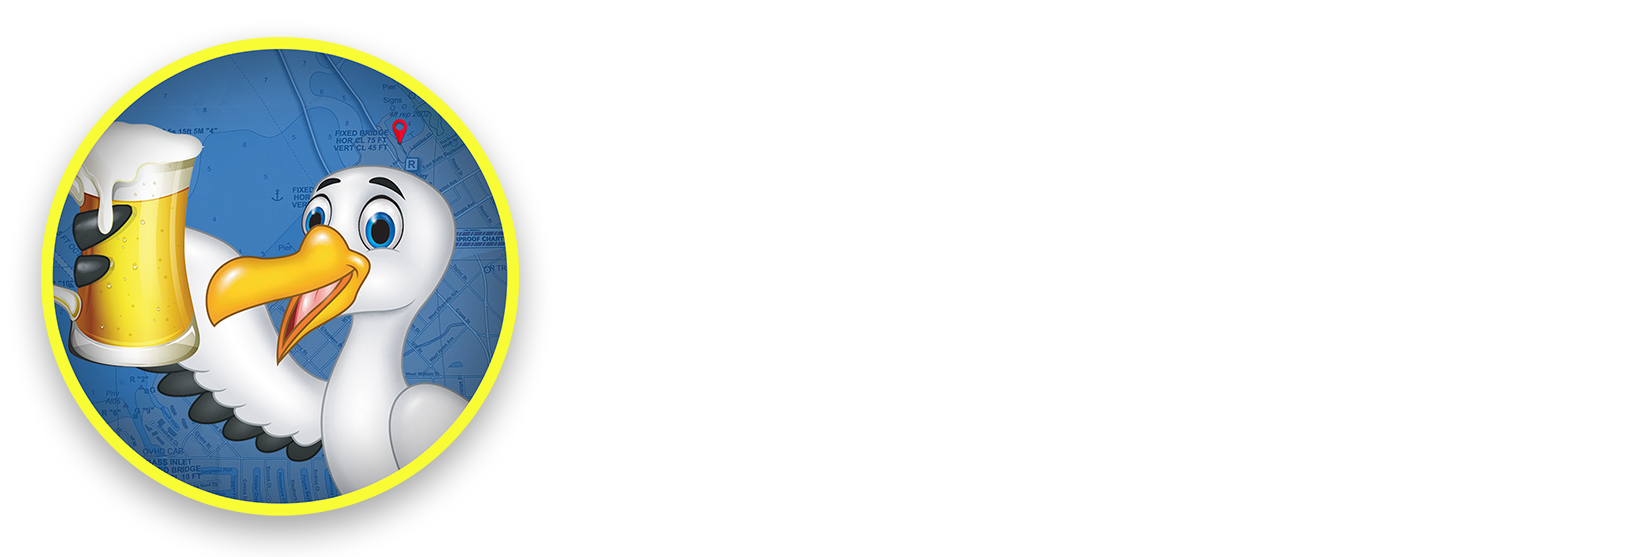 Charlotte Harbor Water Shuttle